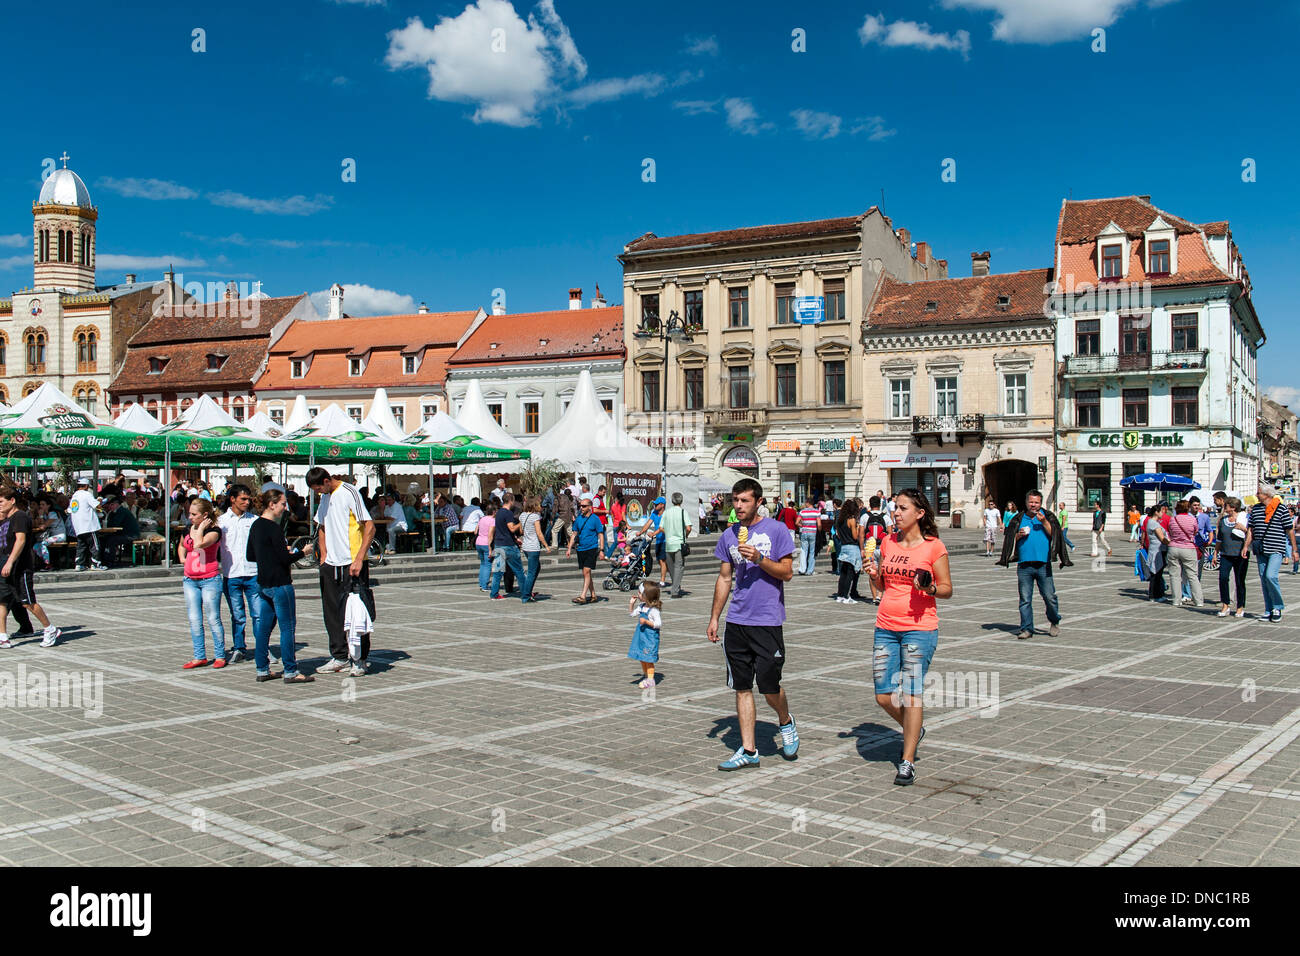 Pedestrians in Brașov Council Square (Piața Sfatului) in the old town in Brasov, a city in the Transylvania region of Romania. Stock Photo